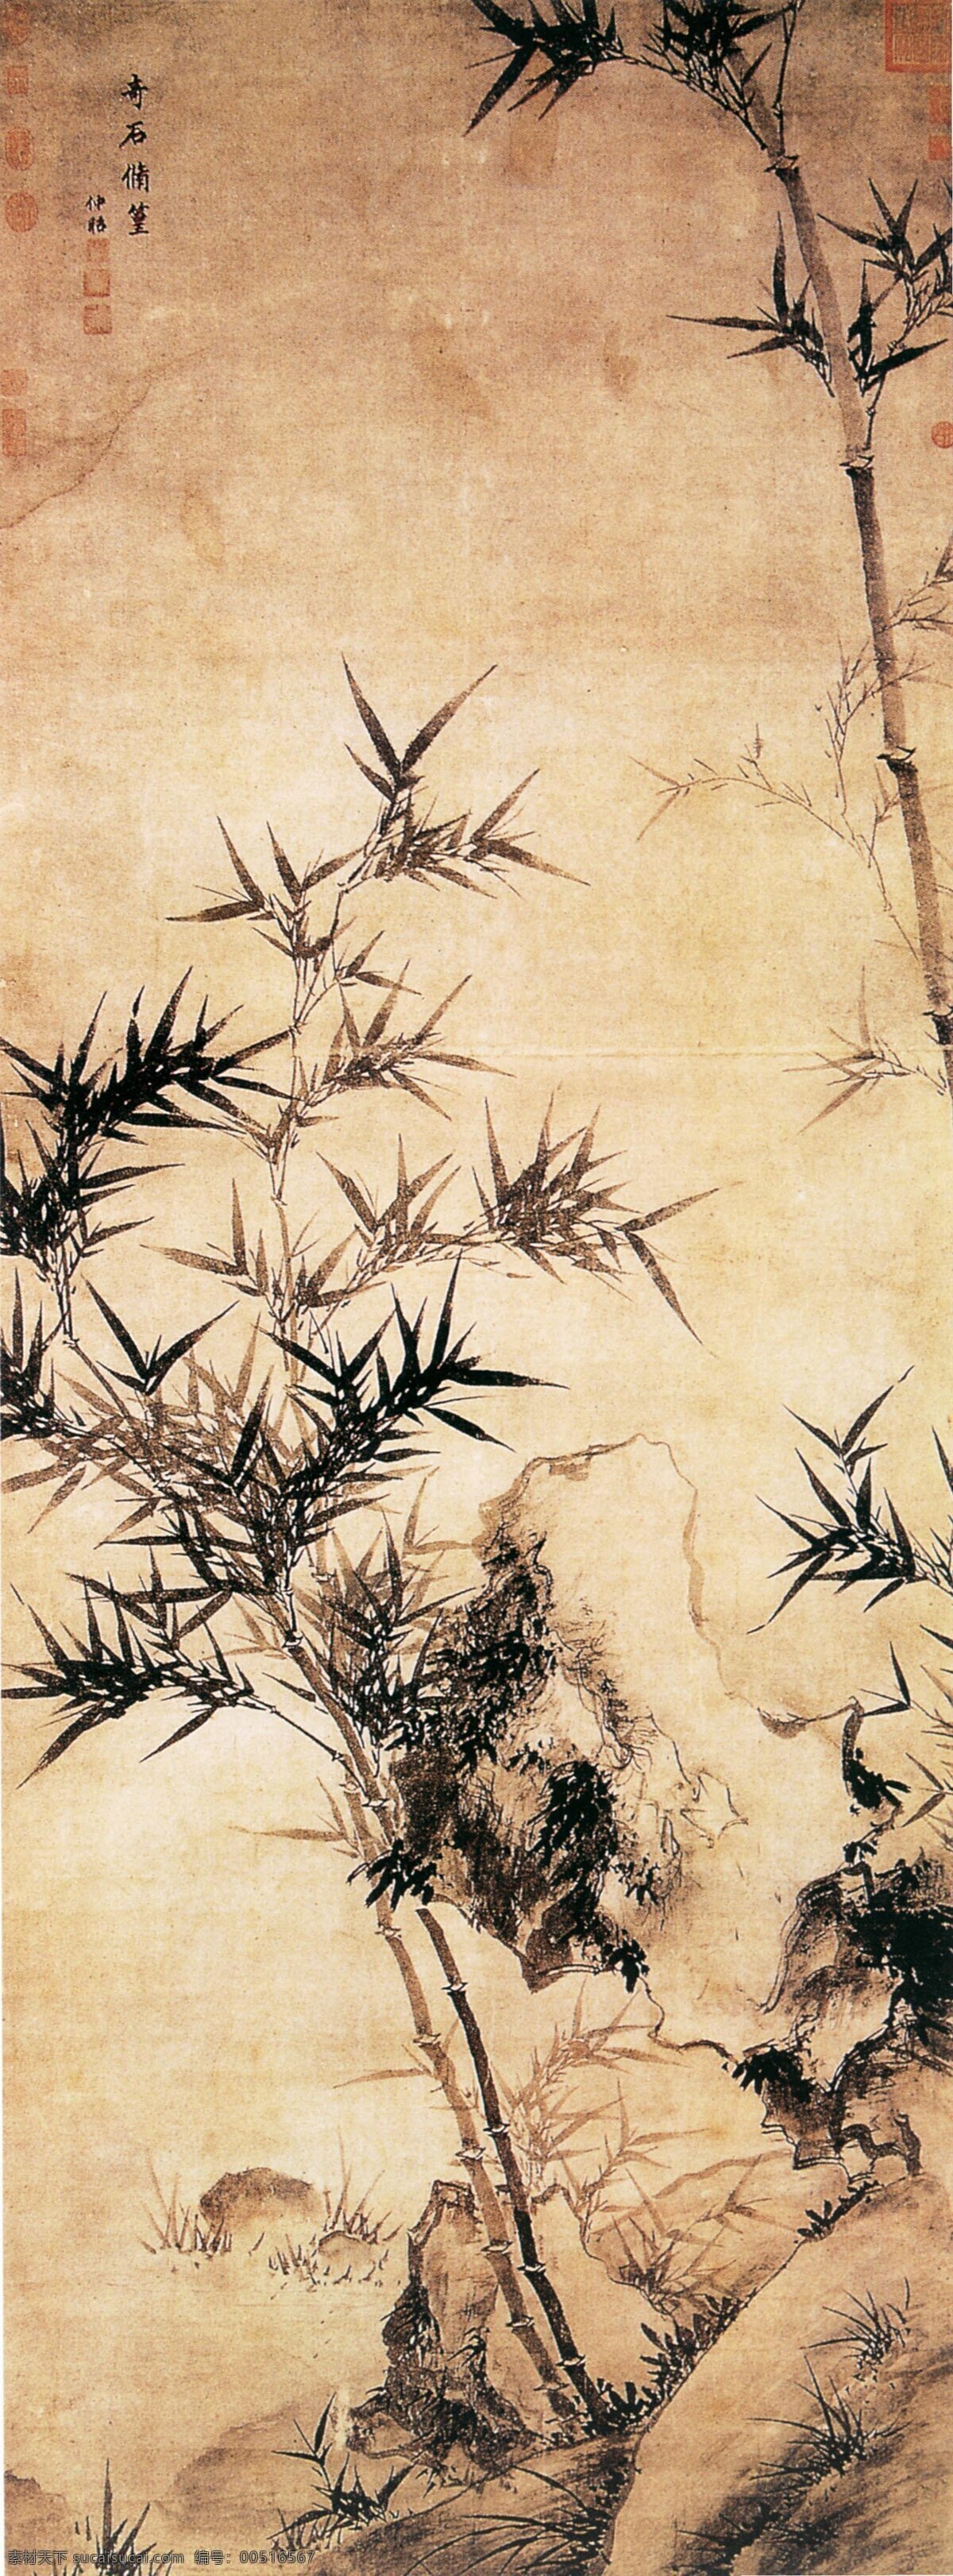 中国 传世 名画 花鸟画 竹子 中国传世名画 古典花鸟画 文化艺术